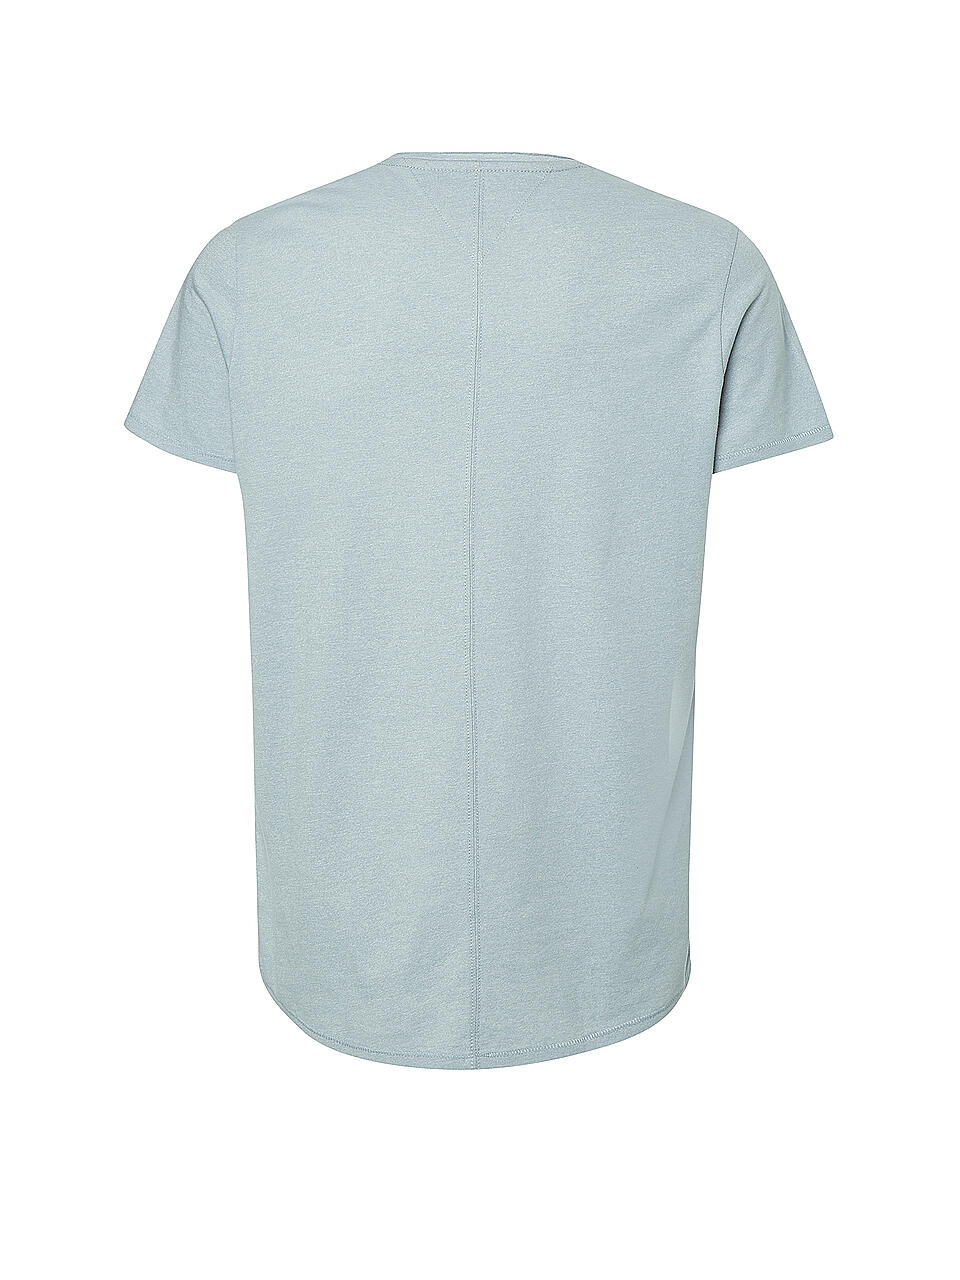 TOMMY JEANS | T-Shirt Slim Fit JASPER | grau